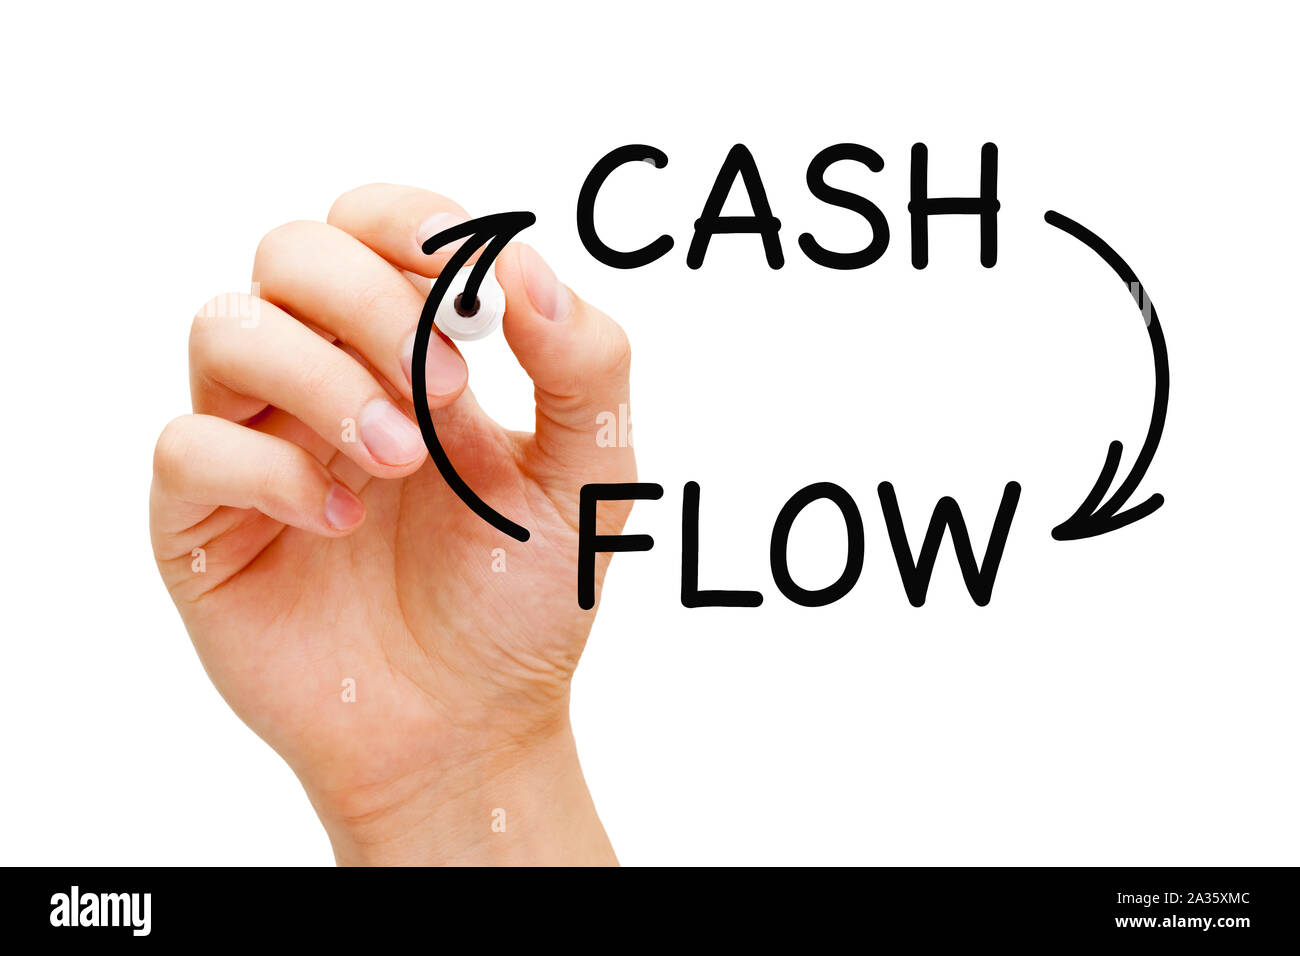 Handzeichnung Cash Flow Pfeile Unternehmen finanzielle Konzept mit schwarzem Marker auf transparentem Glas. Stockfoto